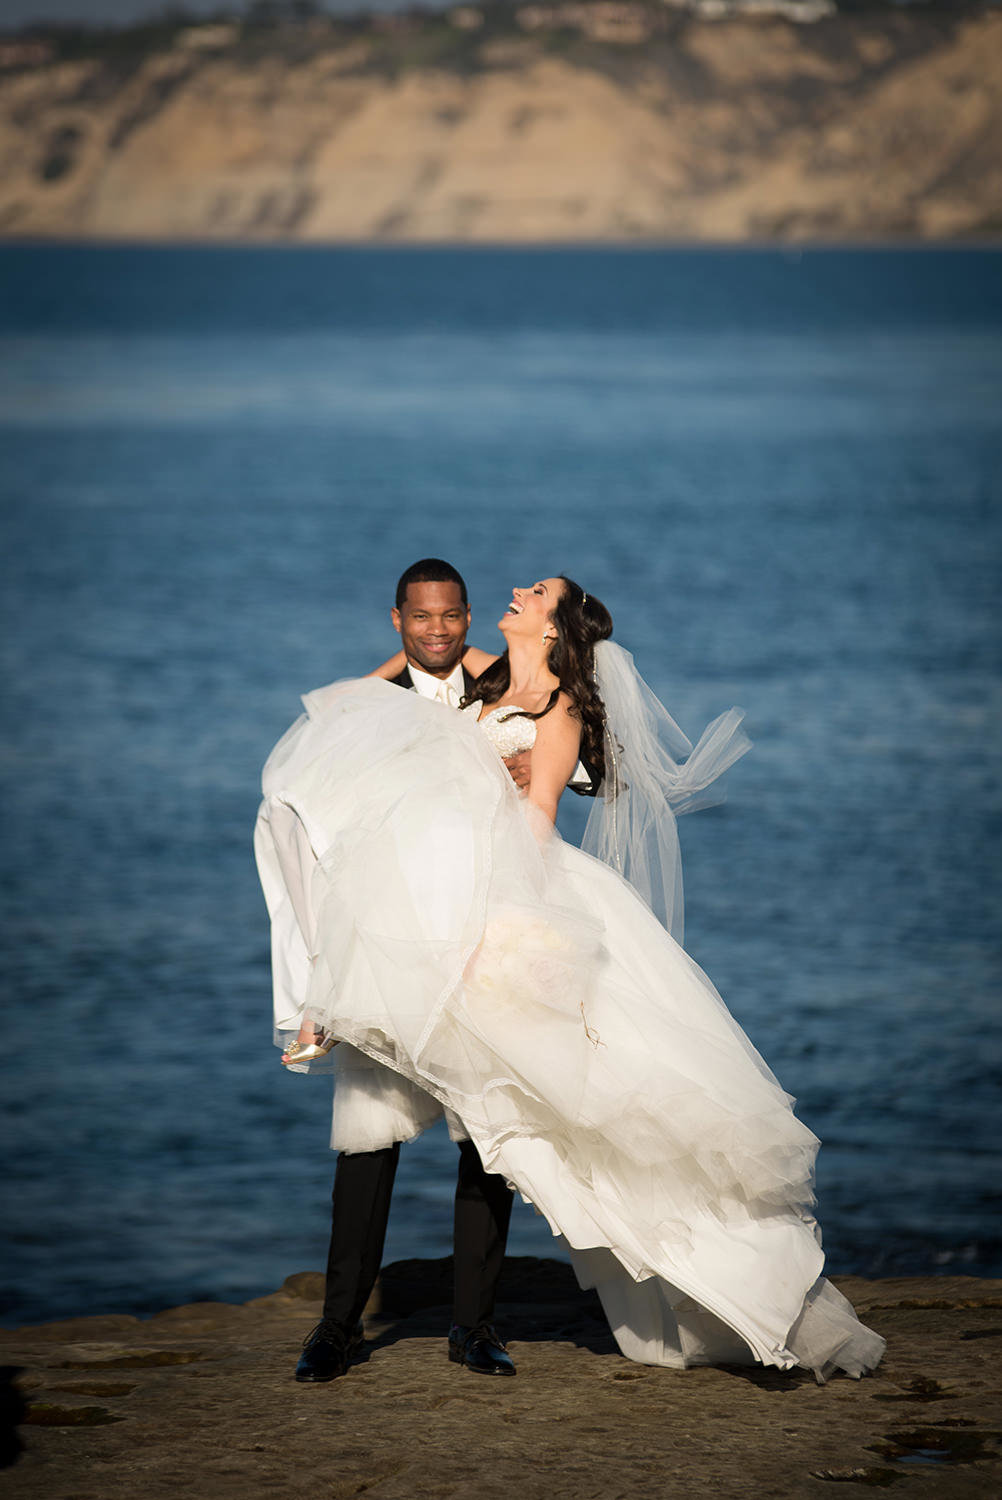 Wedding moment captured at La Jolla Cove